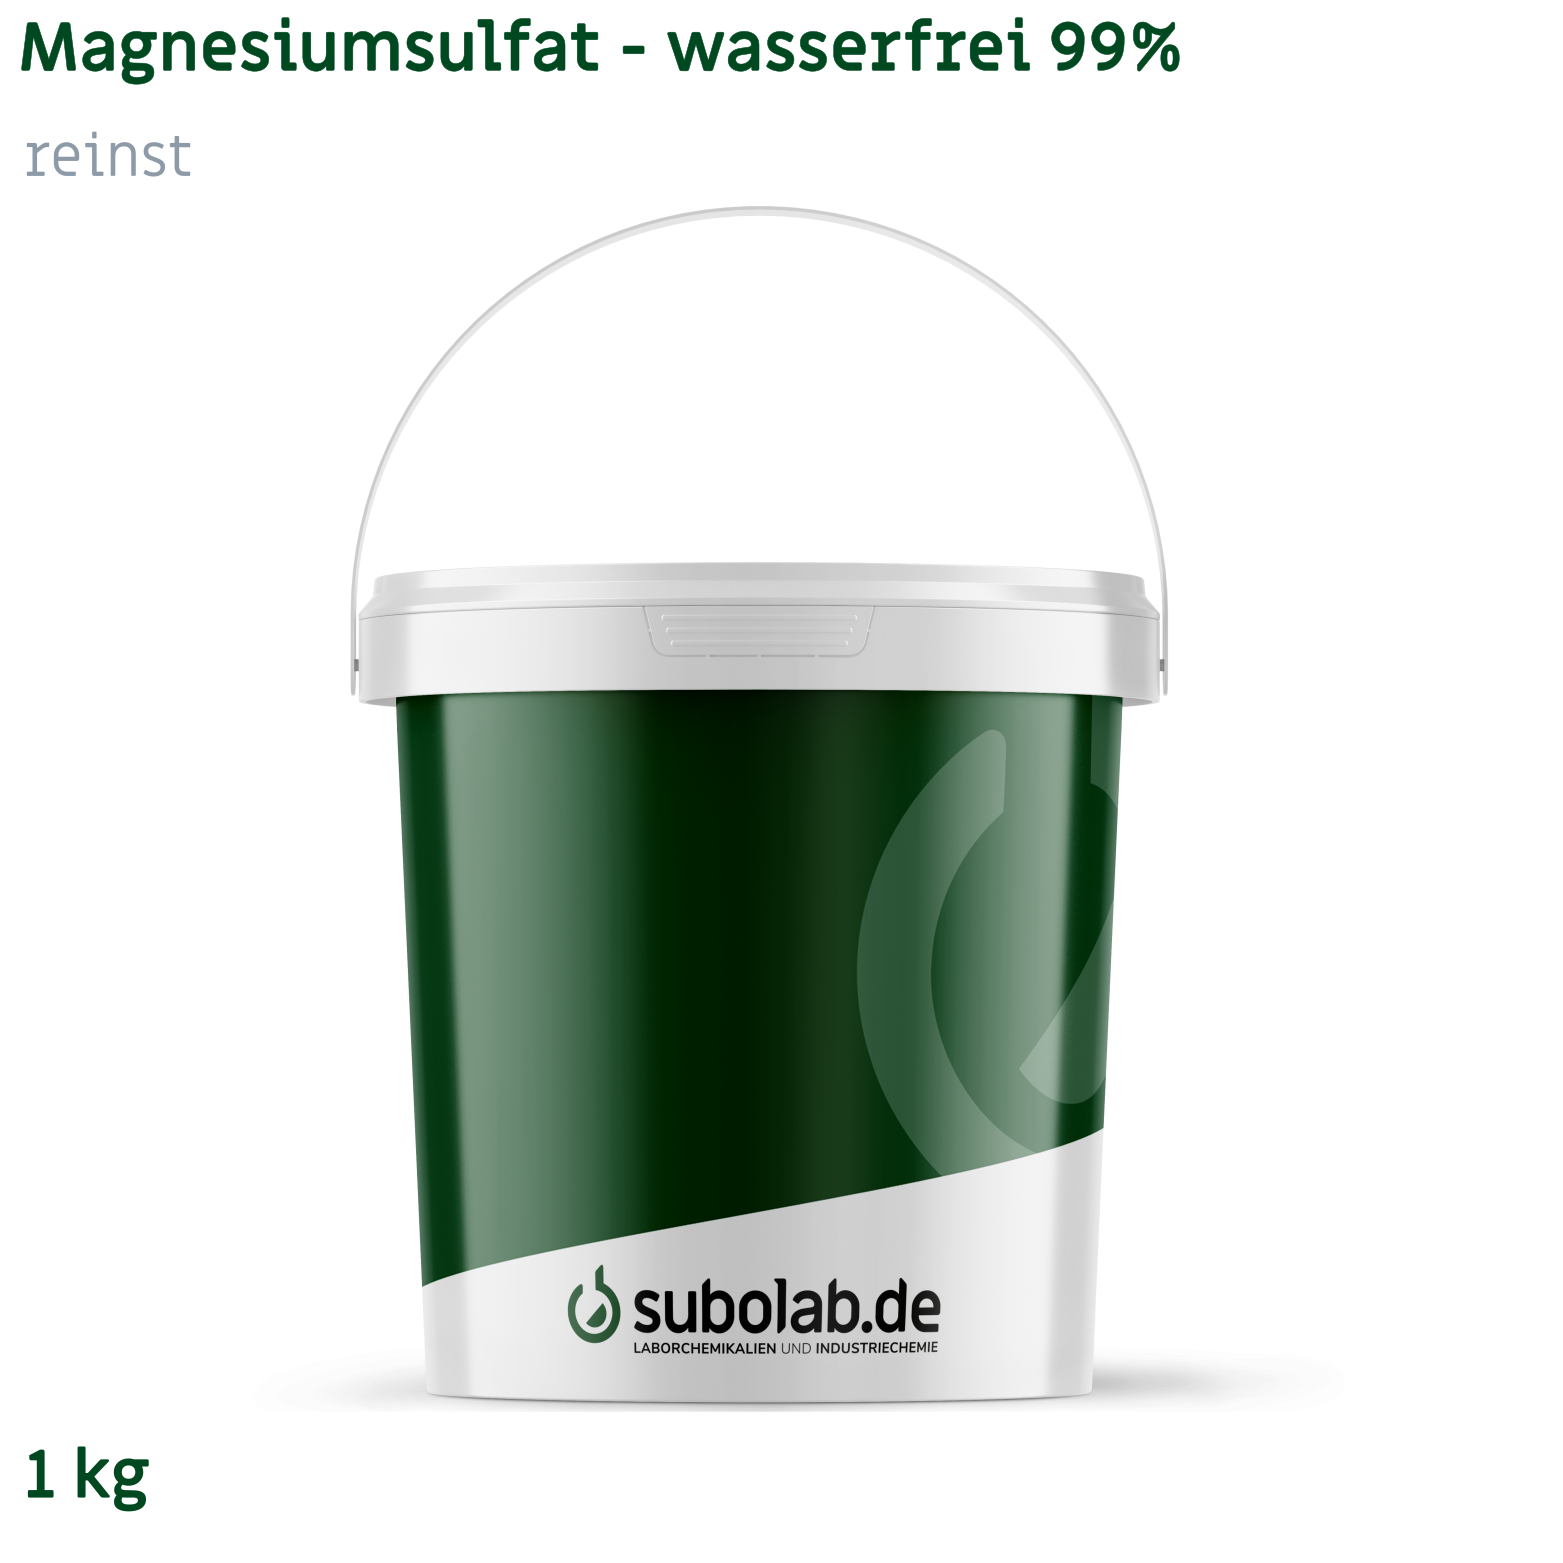 Bild von Magnesiumsulfat - wasserfrei 99% reinst (1 kg)